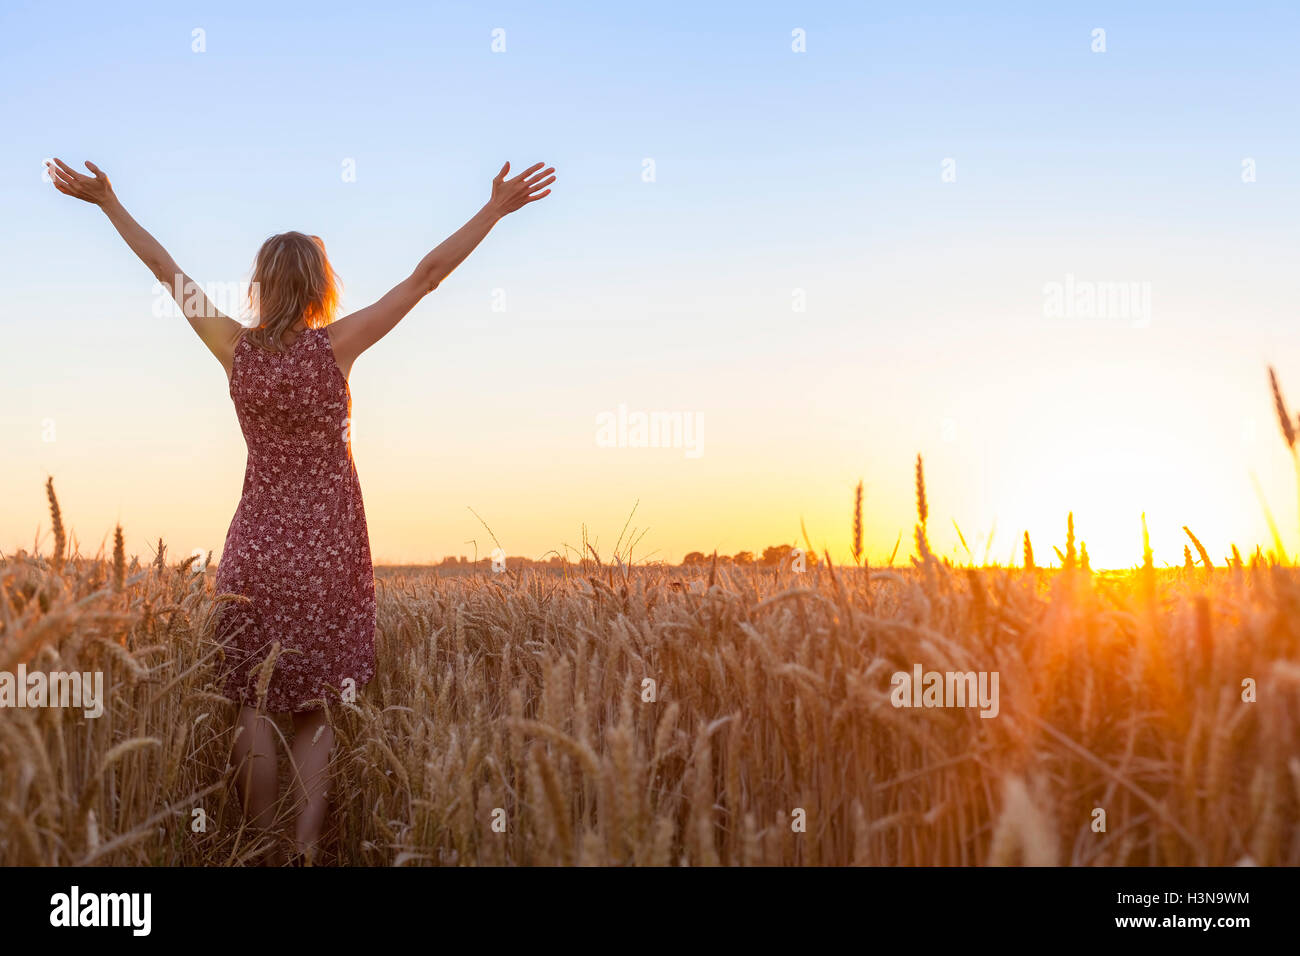 Une femme heureuse pleine de vitalité élever les mains et faisant face au soleil dans un champ de blé au lever du soleil Banque D'Images